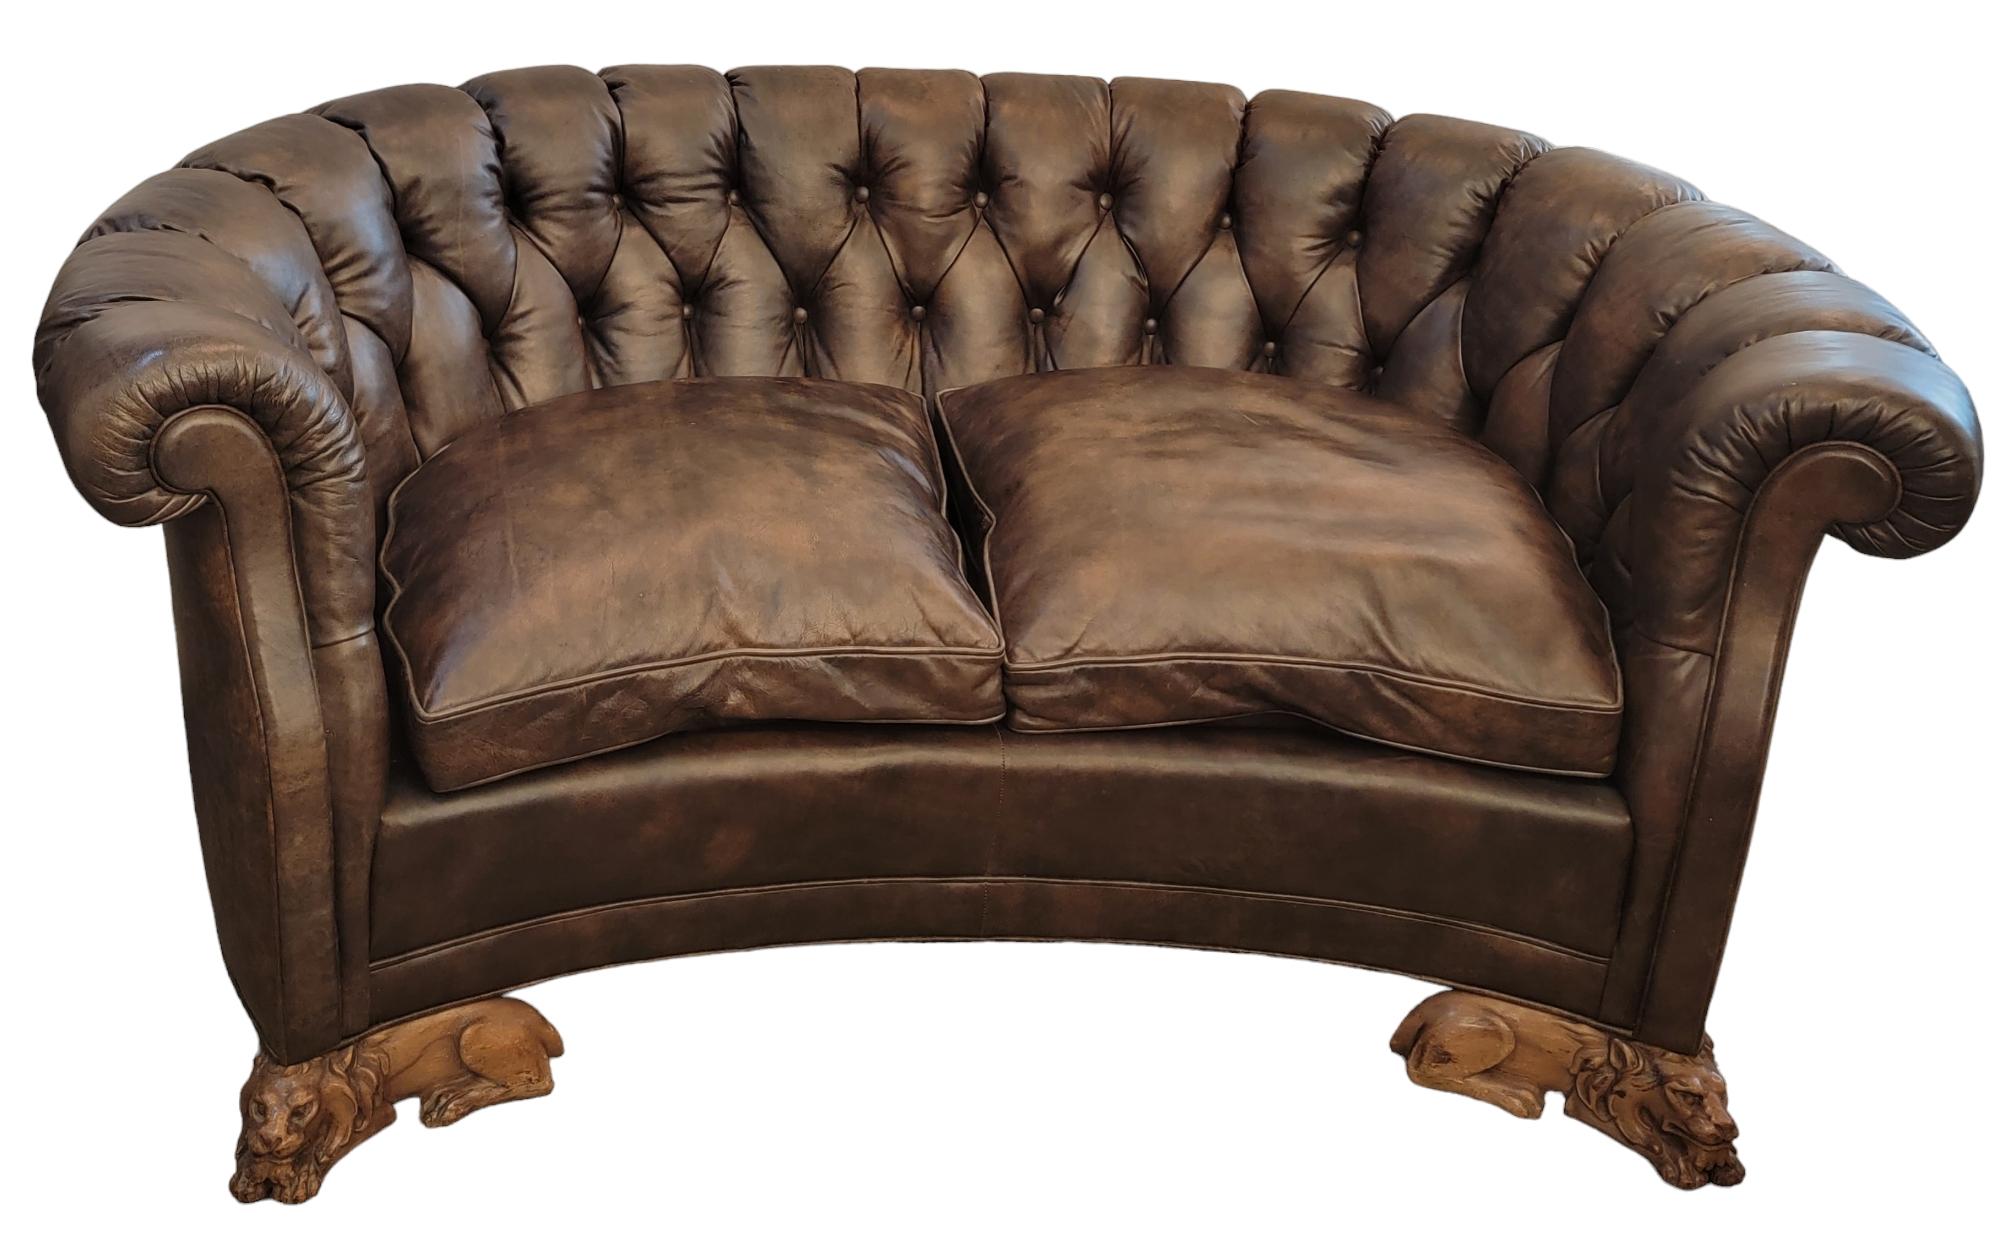 Merveilleux canapé Chesterfield en cuir avec pieds de lions en bois sculptés à la main.
Canapé anglais en cuir et pieds de lion en bois. Le cuir est d'un beau brun varigué sur l'ensemble du canapé. Les pieds arrière sont solides et légèrement